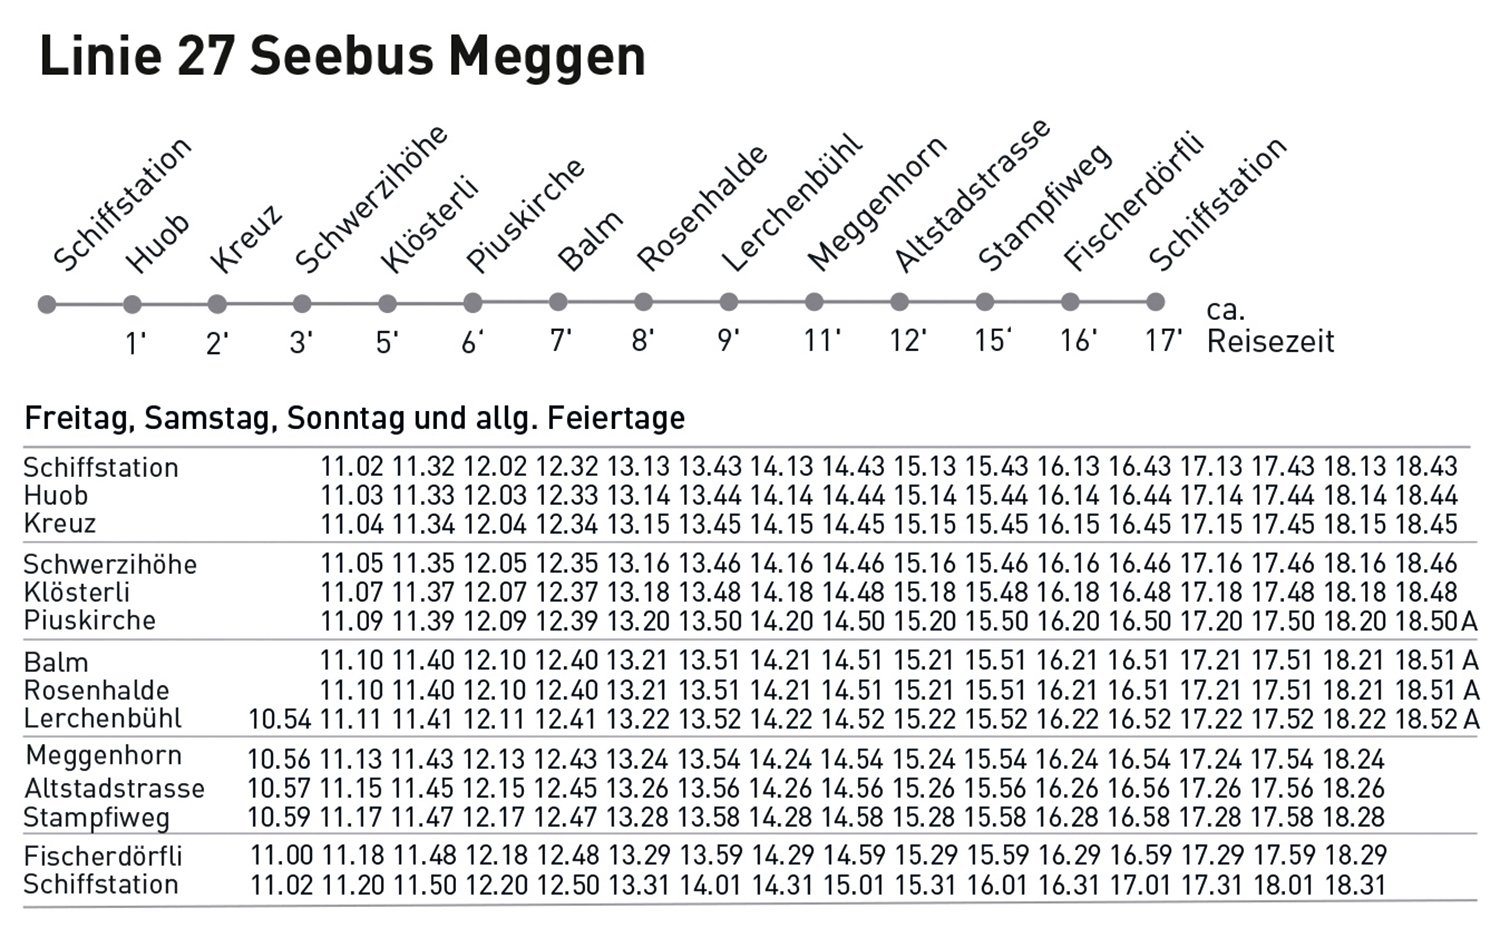 Haltestellen und Fahrplan der Linie 27 Seebus Meggen in der Sommersaison 2024.